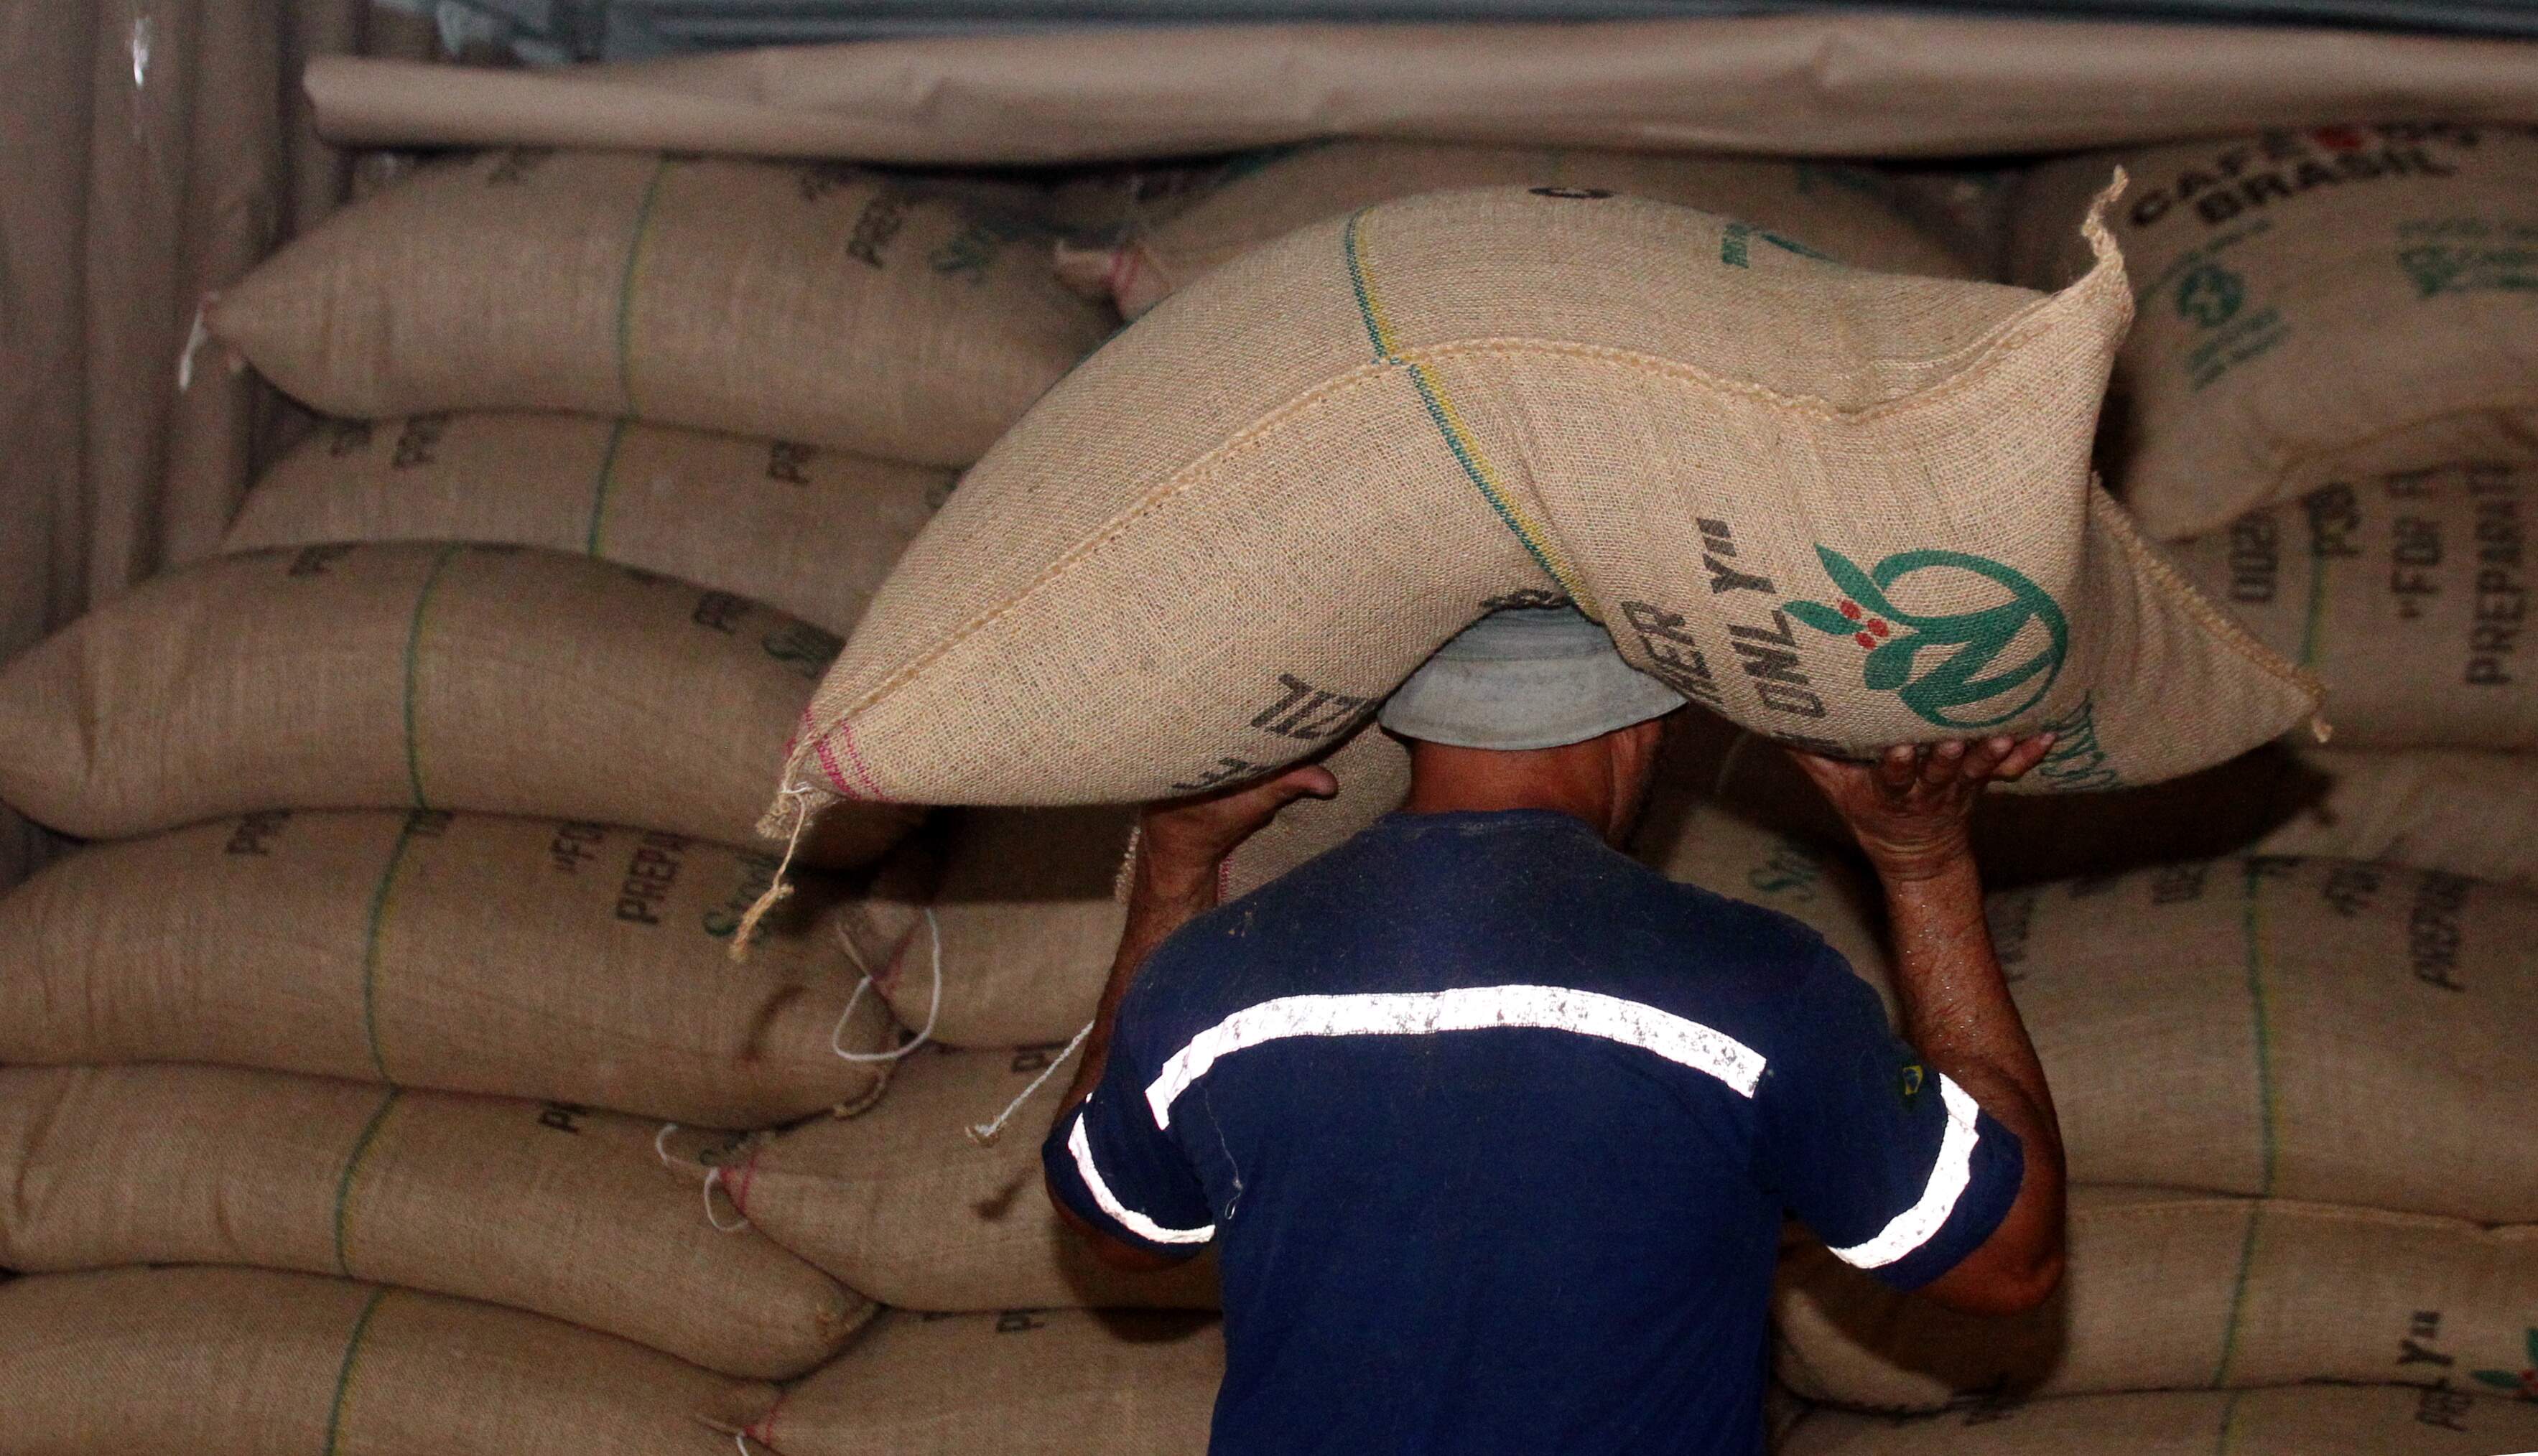 Terminais do Porto de Santos embarcaram 34,5 milhões de sacas de 60 quilos de café no último ano